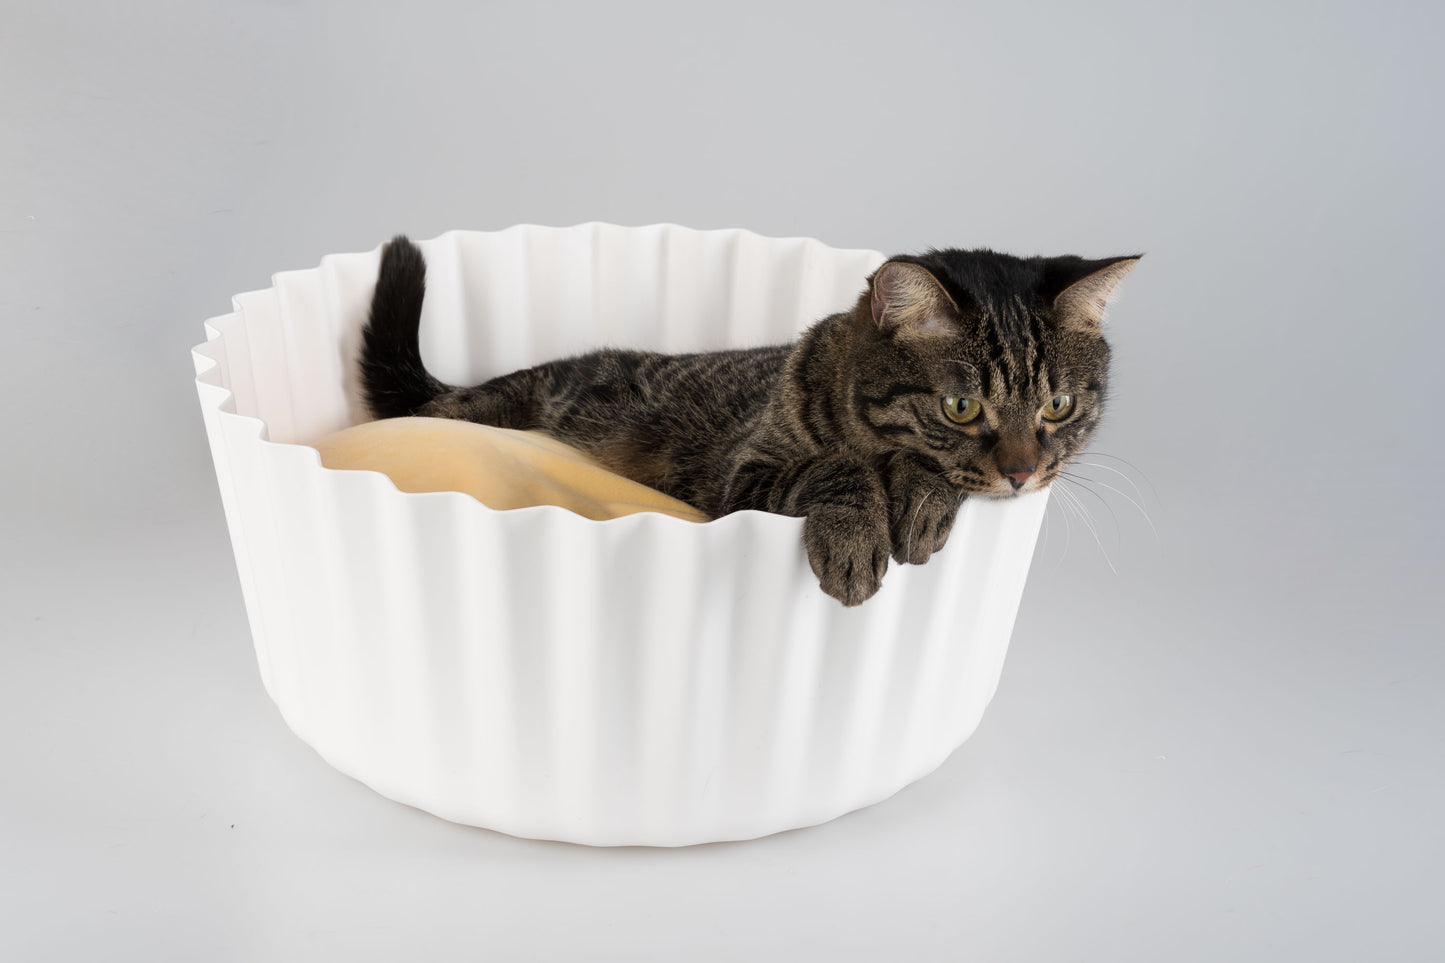 Cupcake cat bed